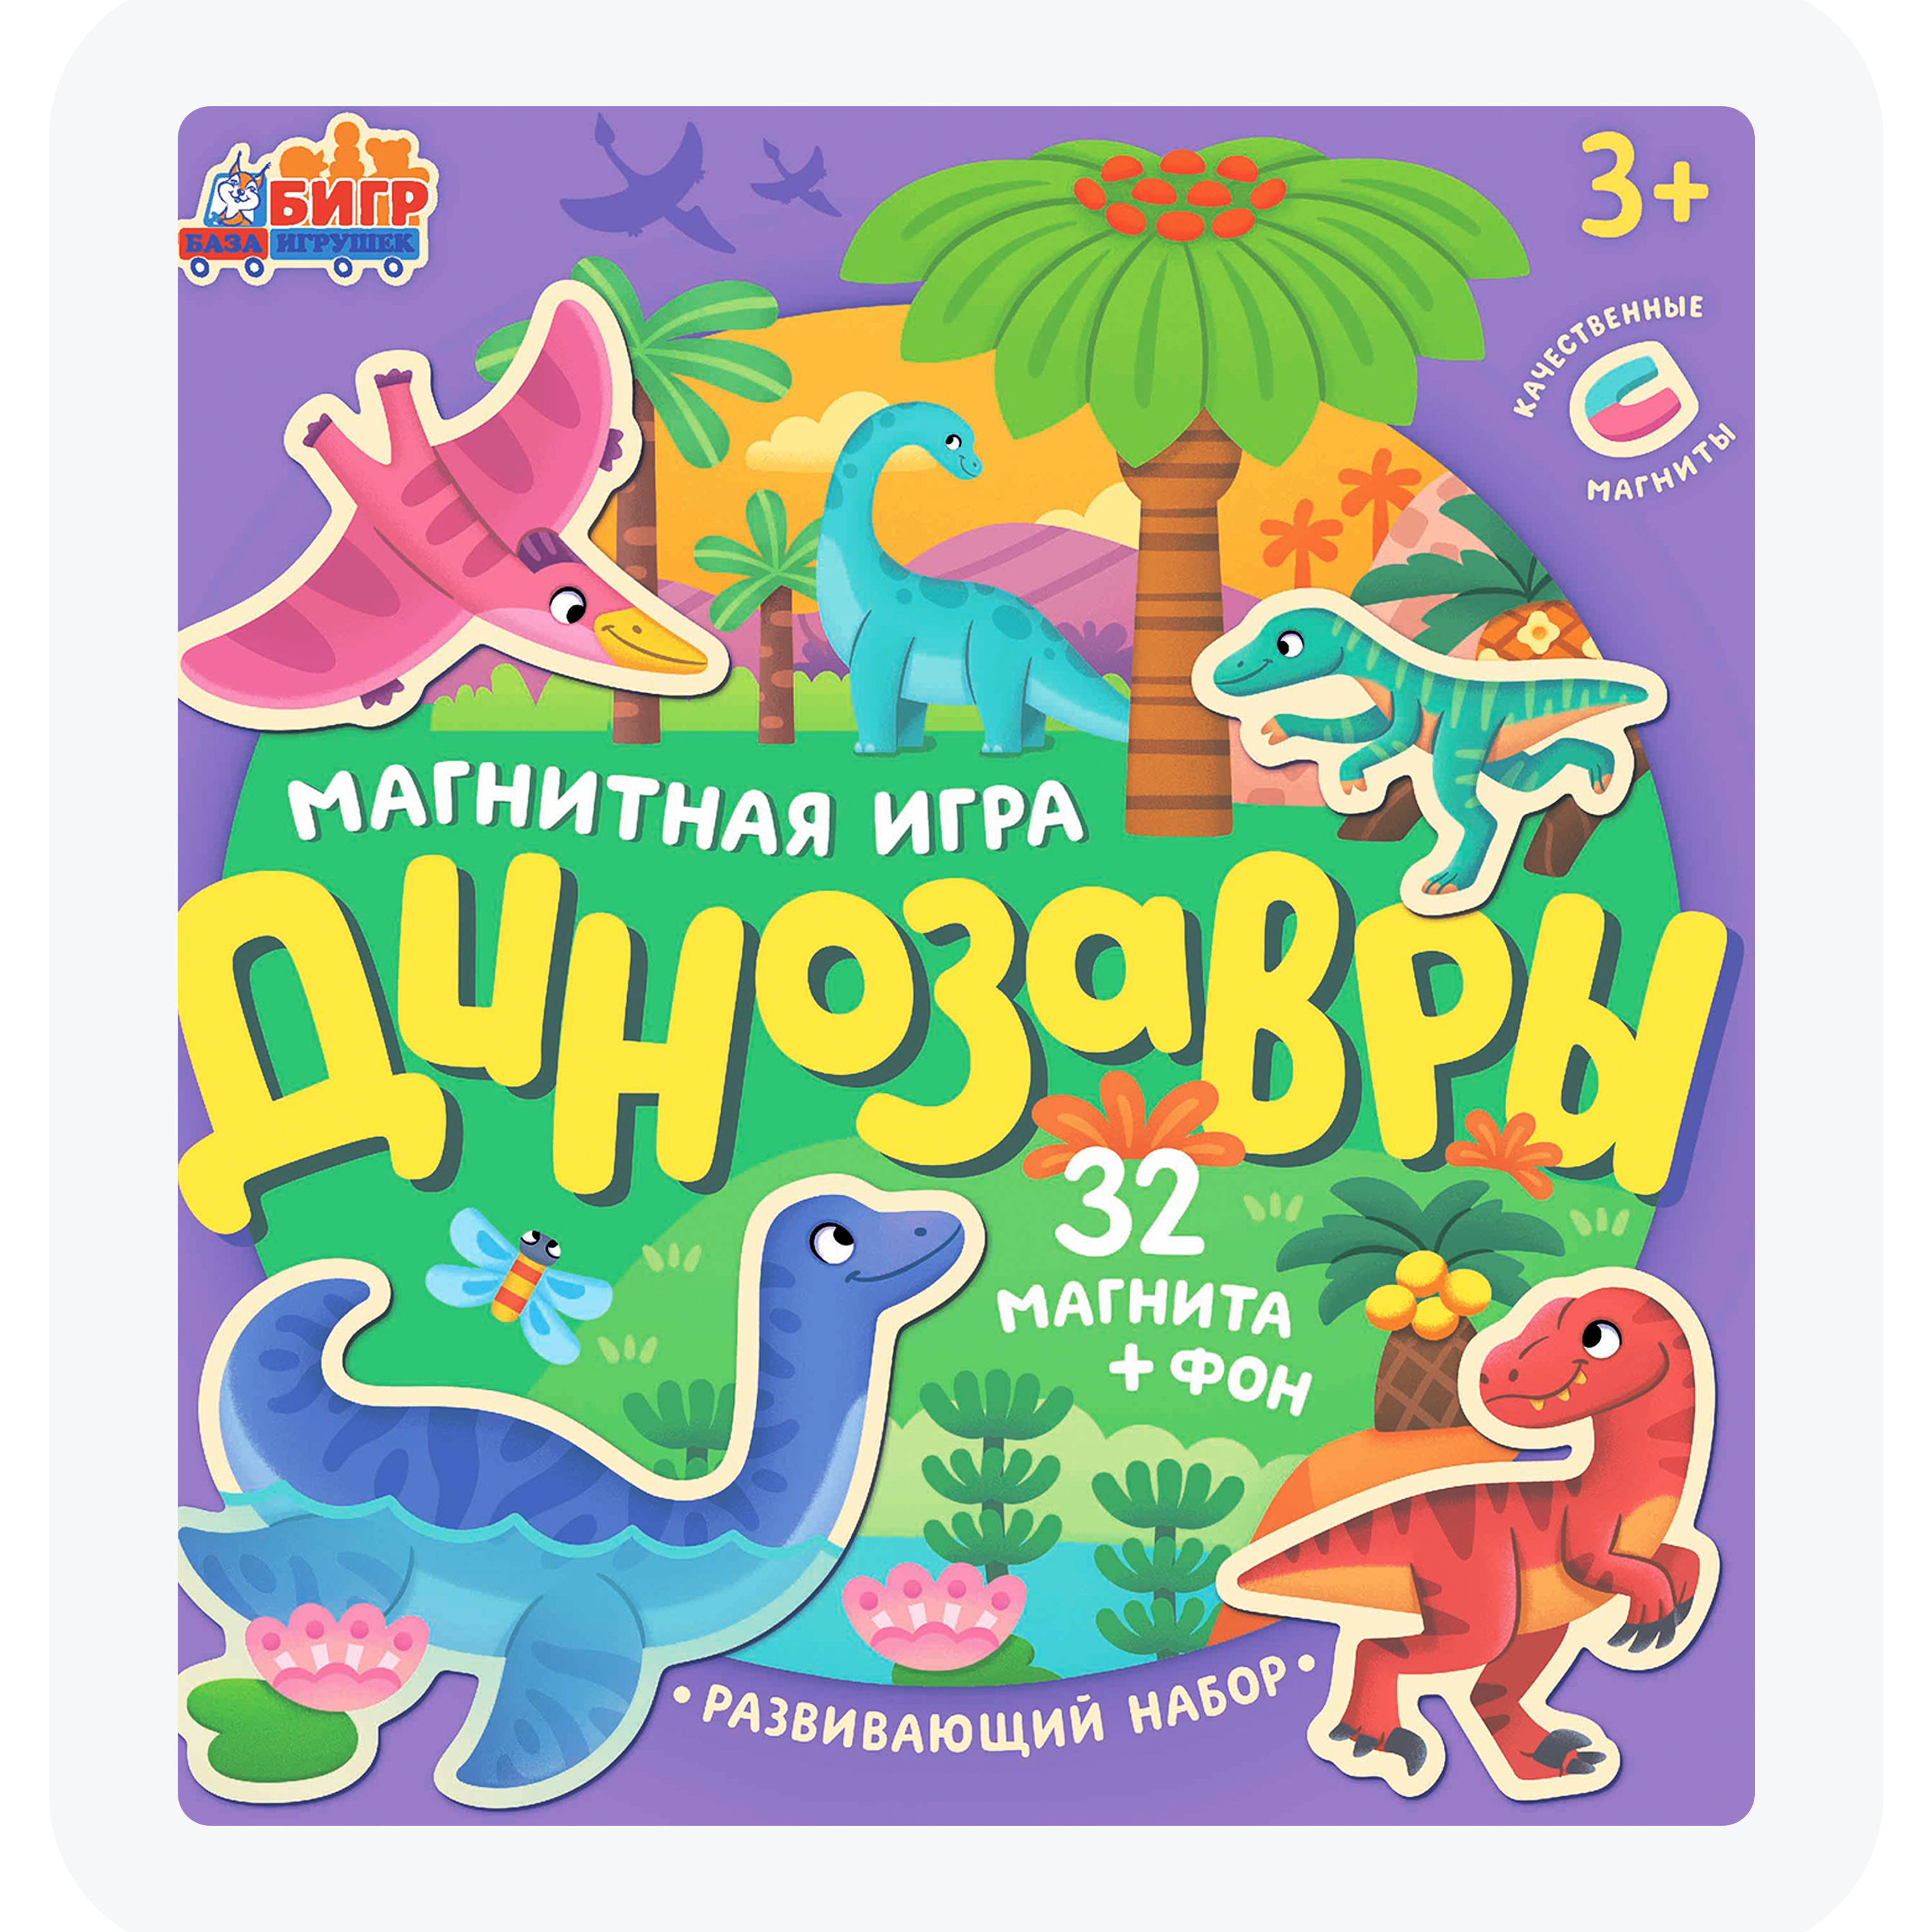 Настольная магнитная игра для детей в дорогу Бигр Динозавры, УД84 книга игра janod динозавры магнитная j02590